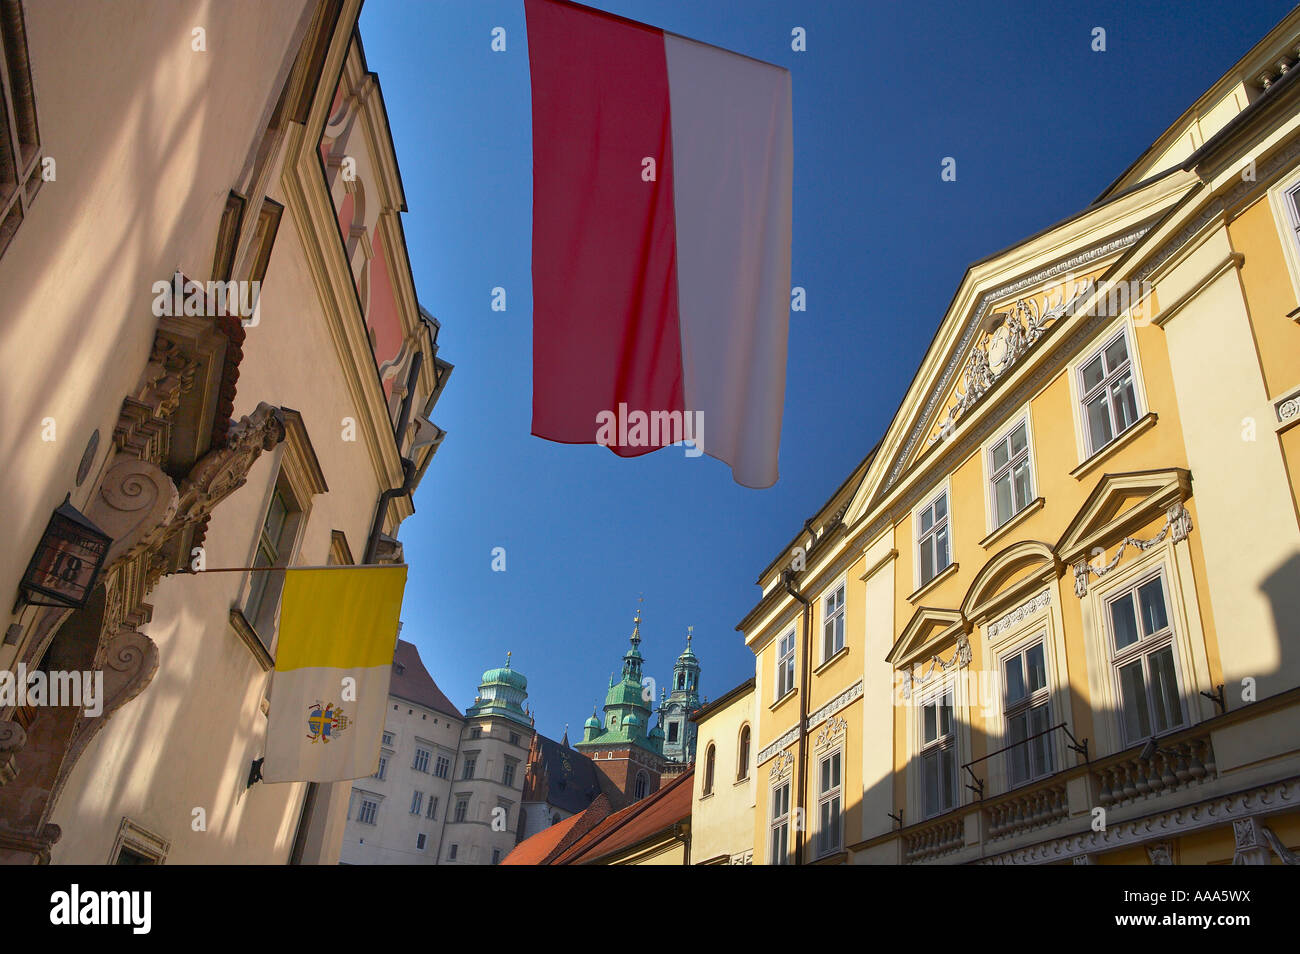 Ulica Kanonicza, Stare Miasto Old Town, el Wawel, Cracovia, Cracovia, Polonia. Foto de stock